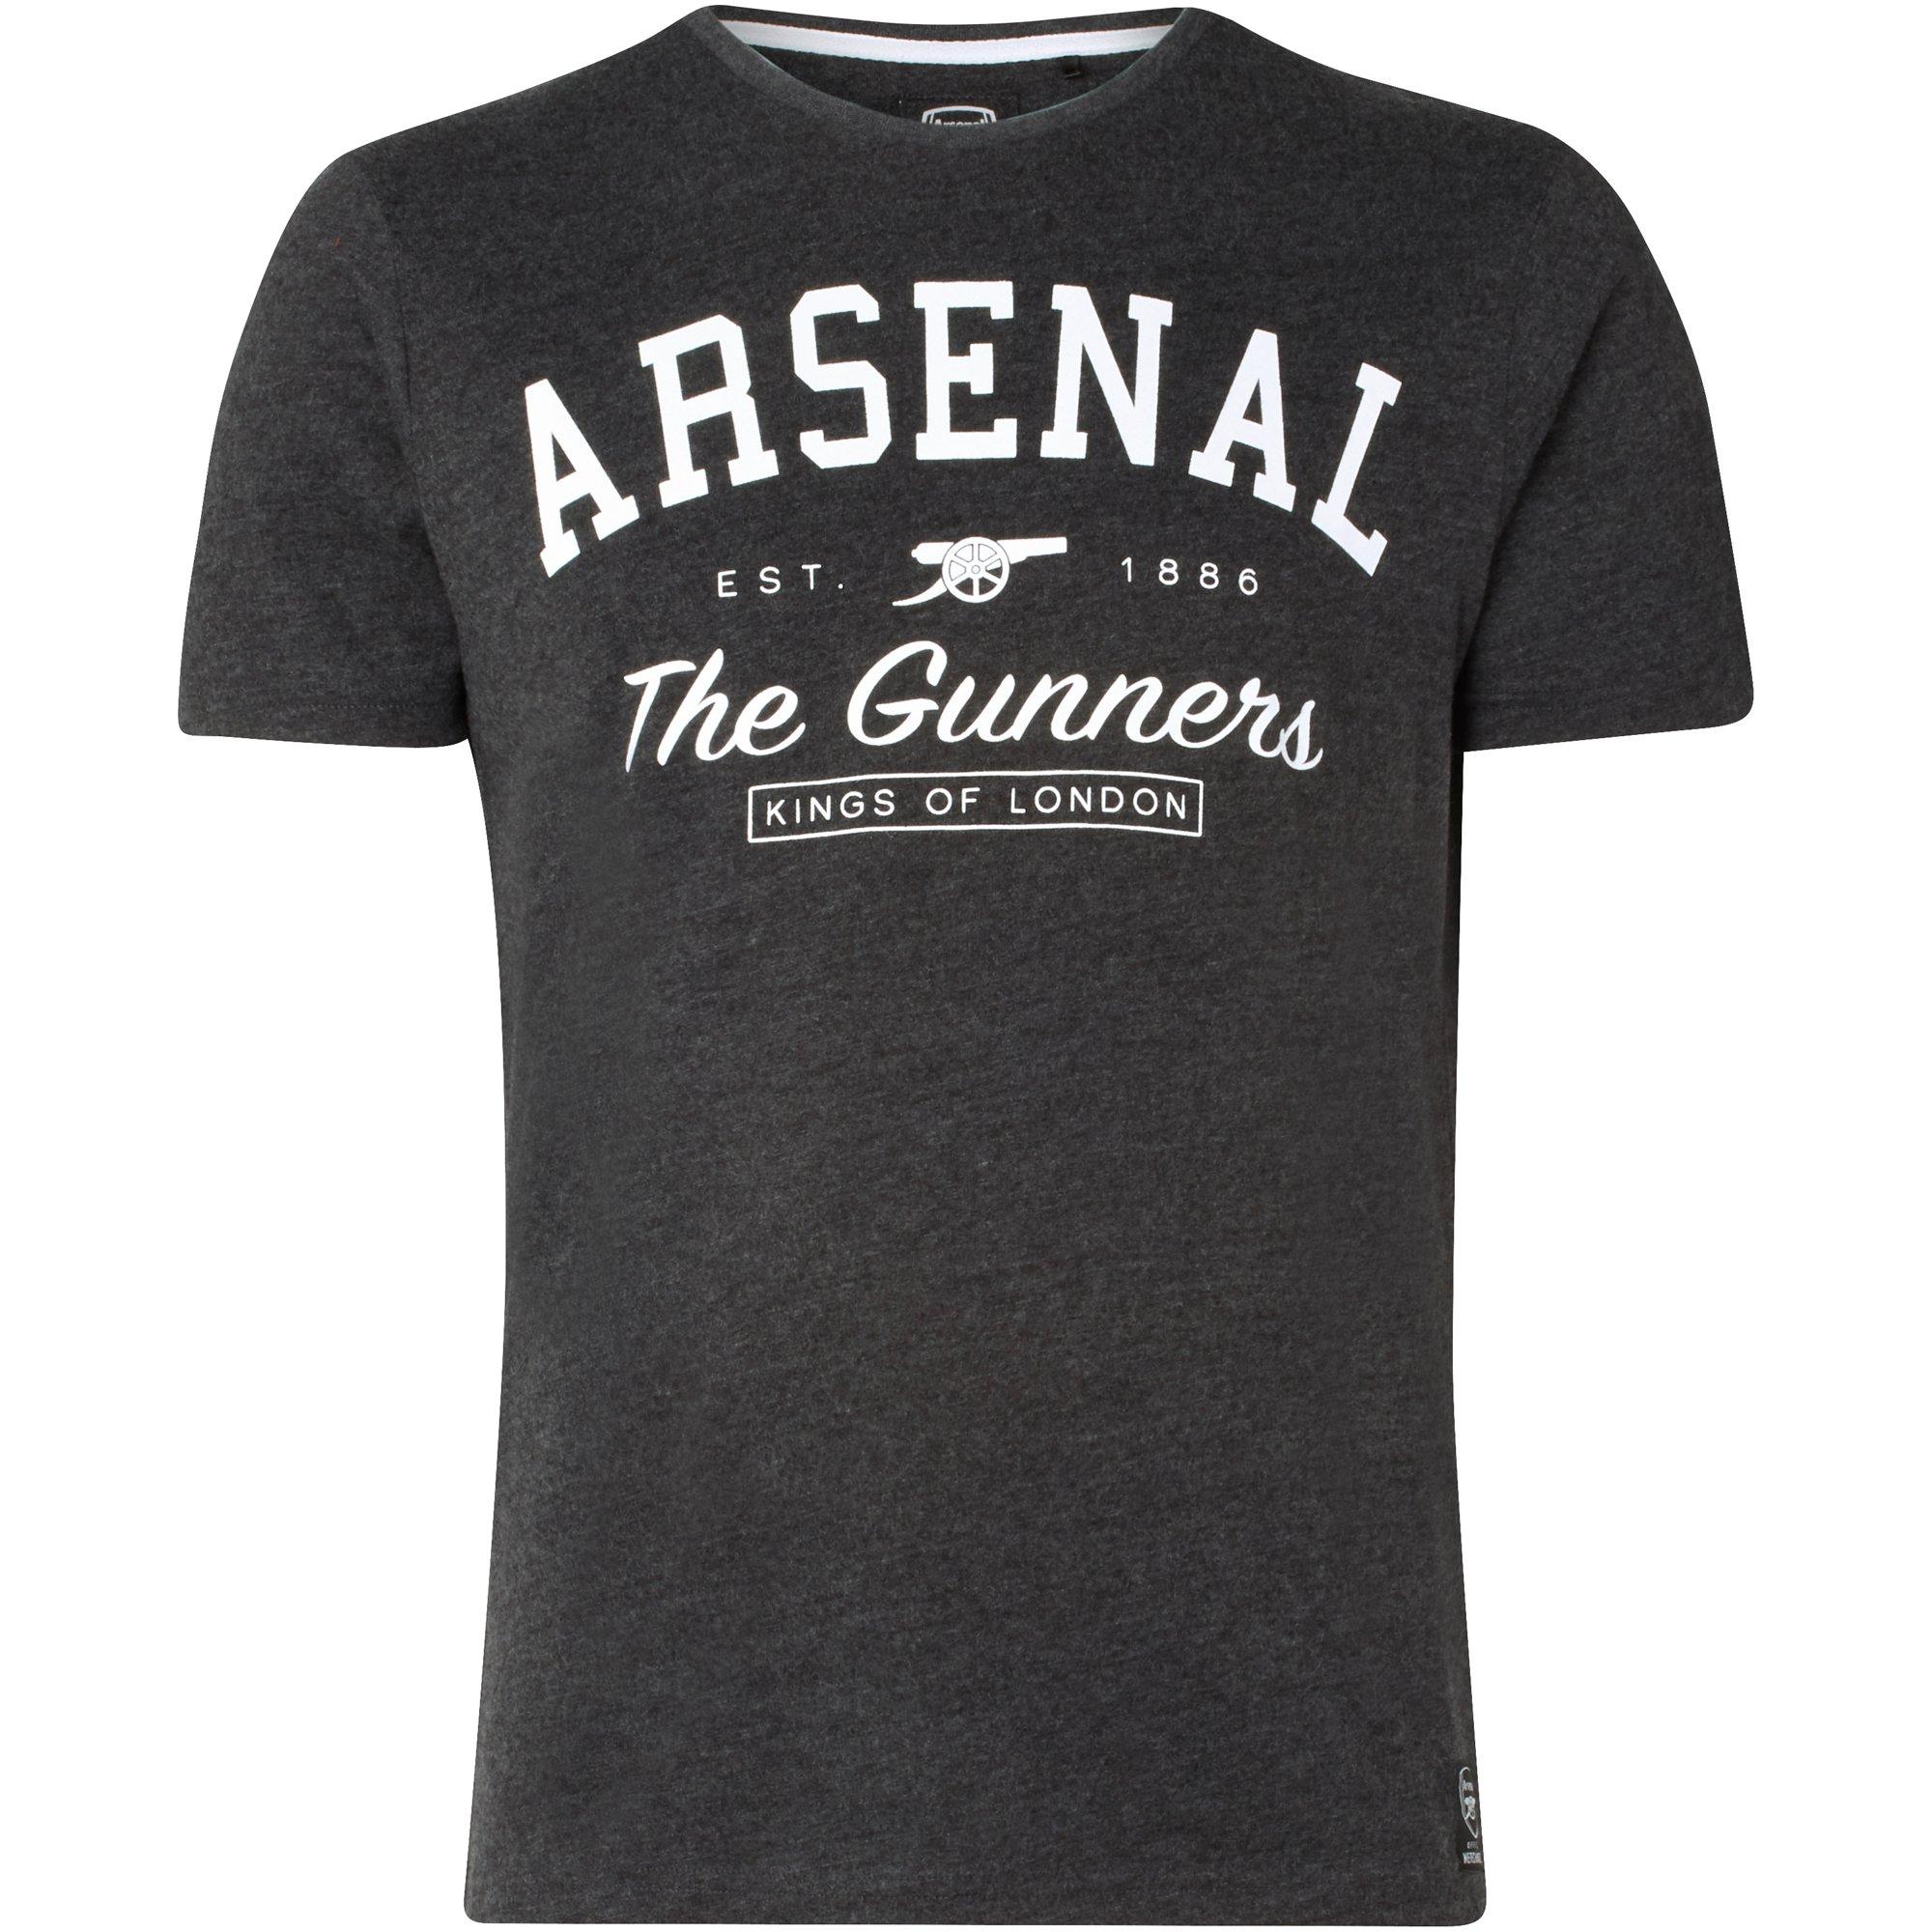 buy arsenal shirt